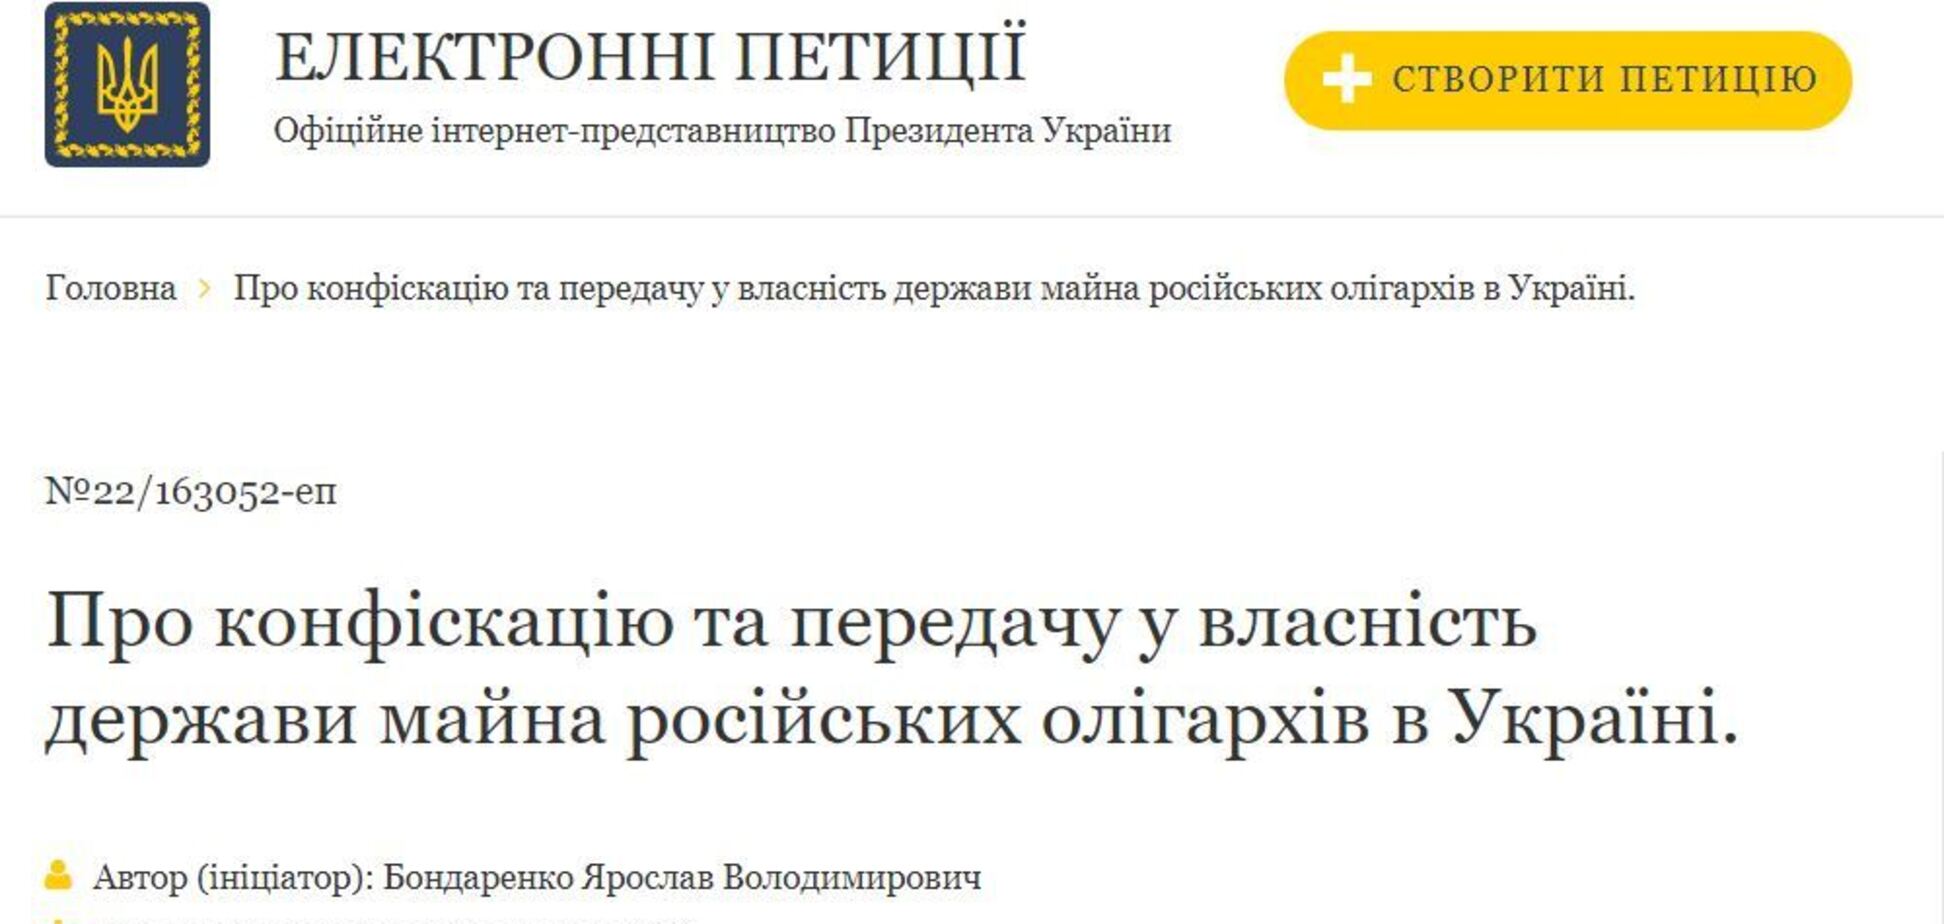 Створено петицію до президента щодо механізму конфіскації активів олігархів РФ в Україні